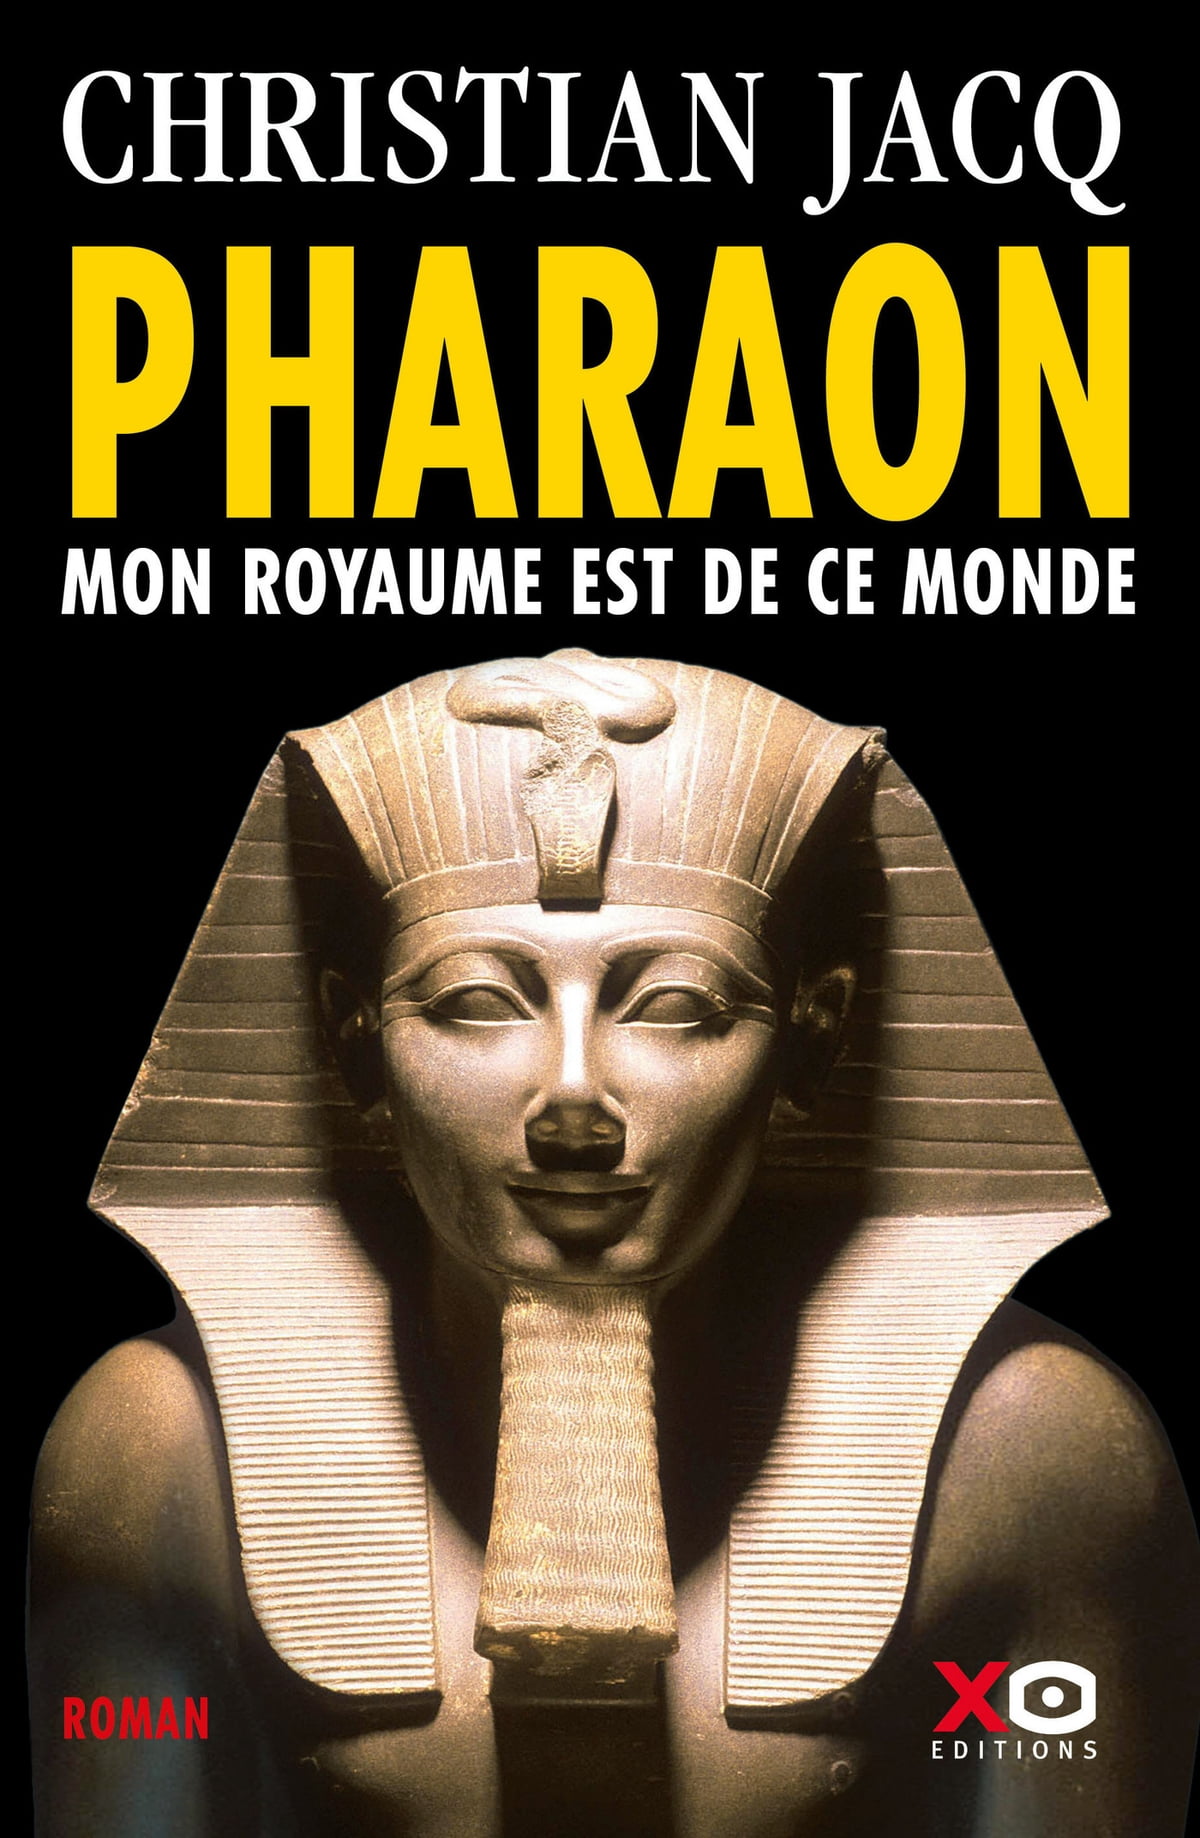 Читать фараон 3. Фараон. Фараон плакат. Фараон демотиватор. Pharaoh плакат.